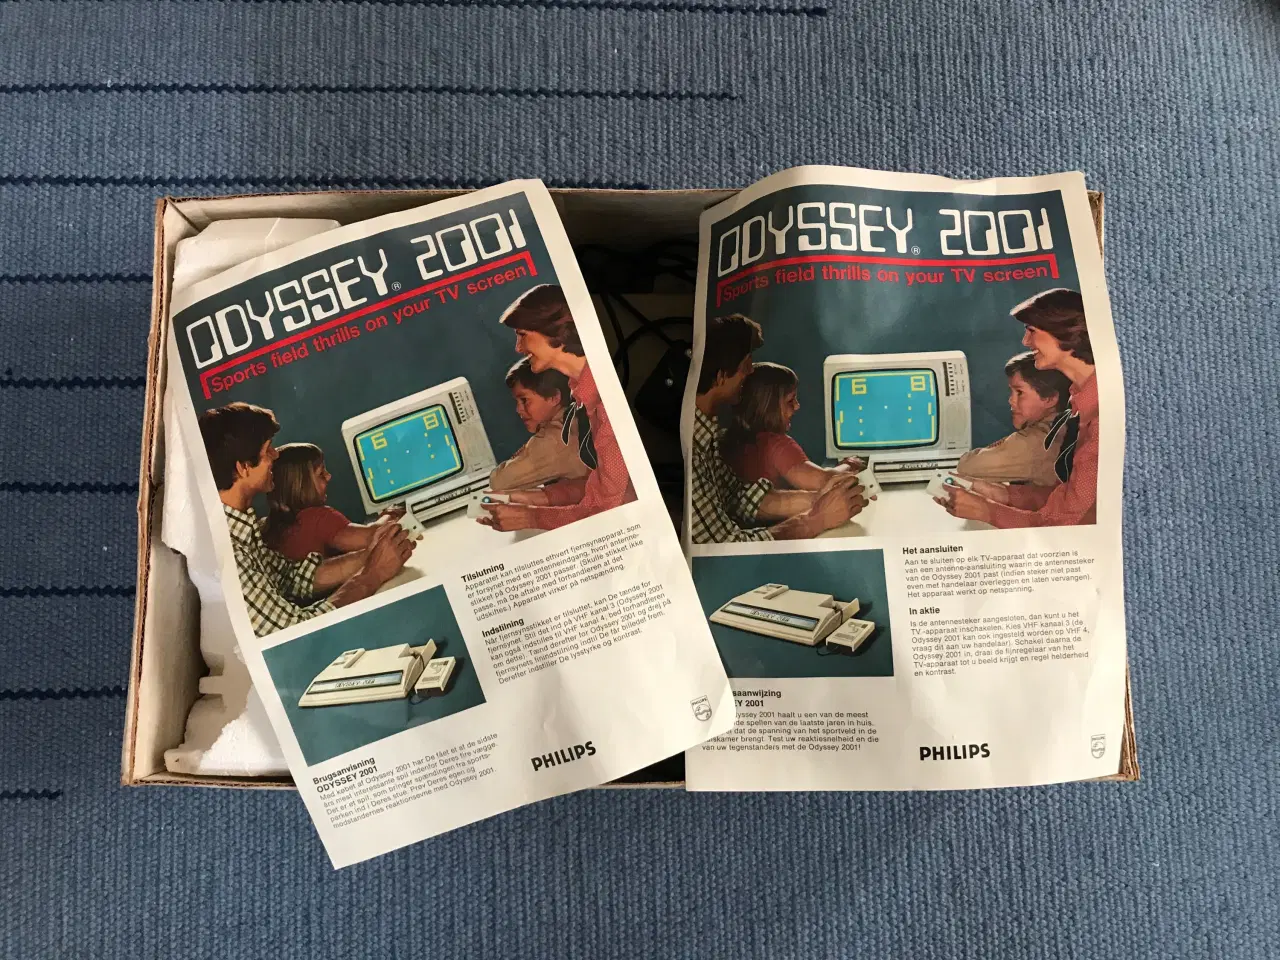 Billede 3 - Odyssey 2001 spillekonsol fra 1977